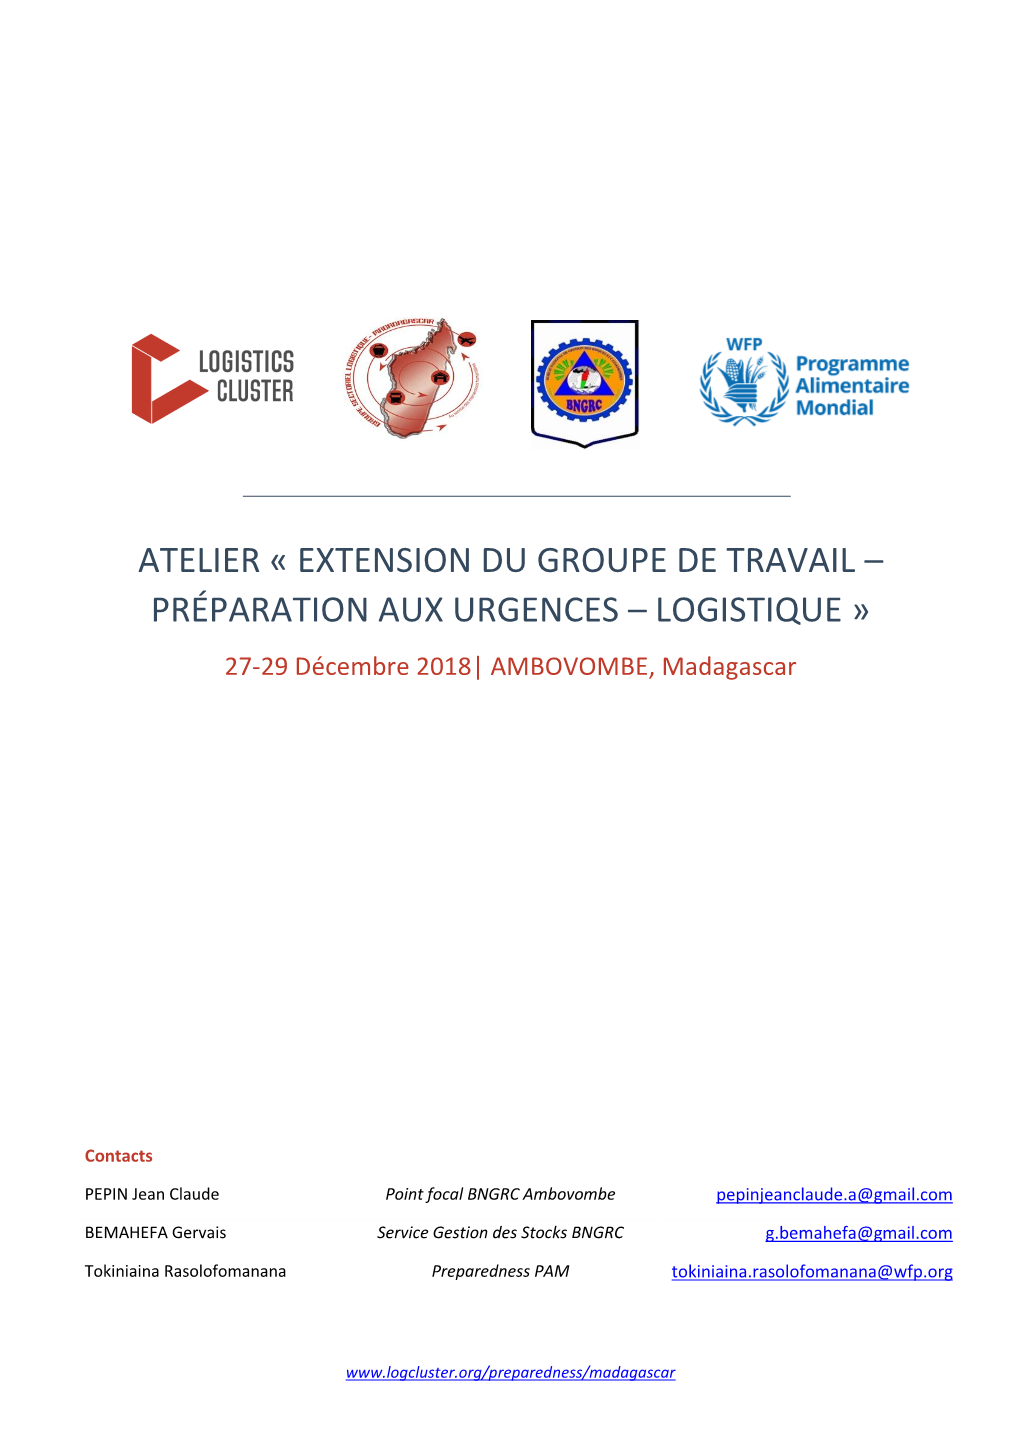 ATELIER « EXTENSION DU GROUPE DE TRAVAIL – PRÉPARATION AUX URGENCES – LOGISTIQUE » 27-29 Décembre 2018| AMBOVOMBE, Madagascar